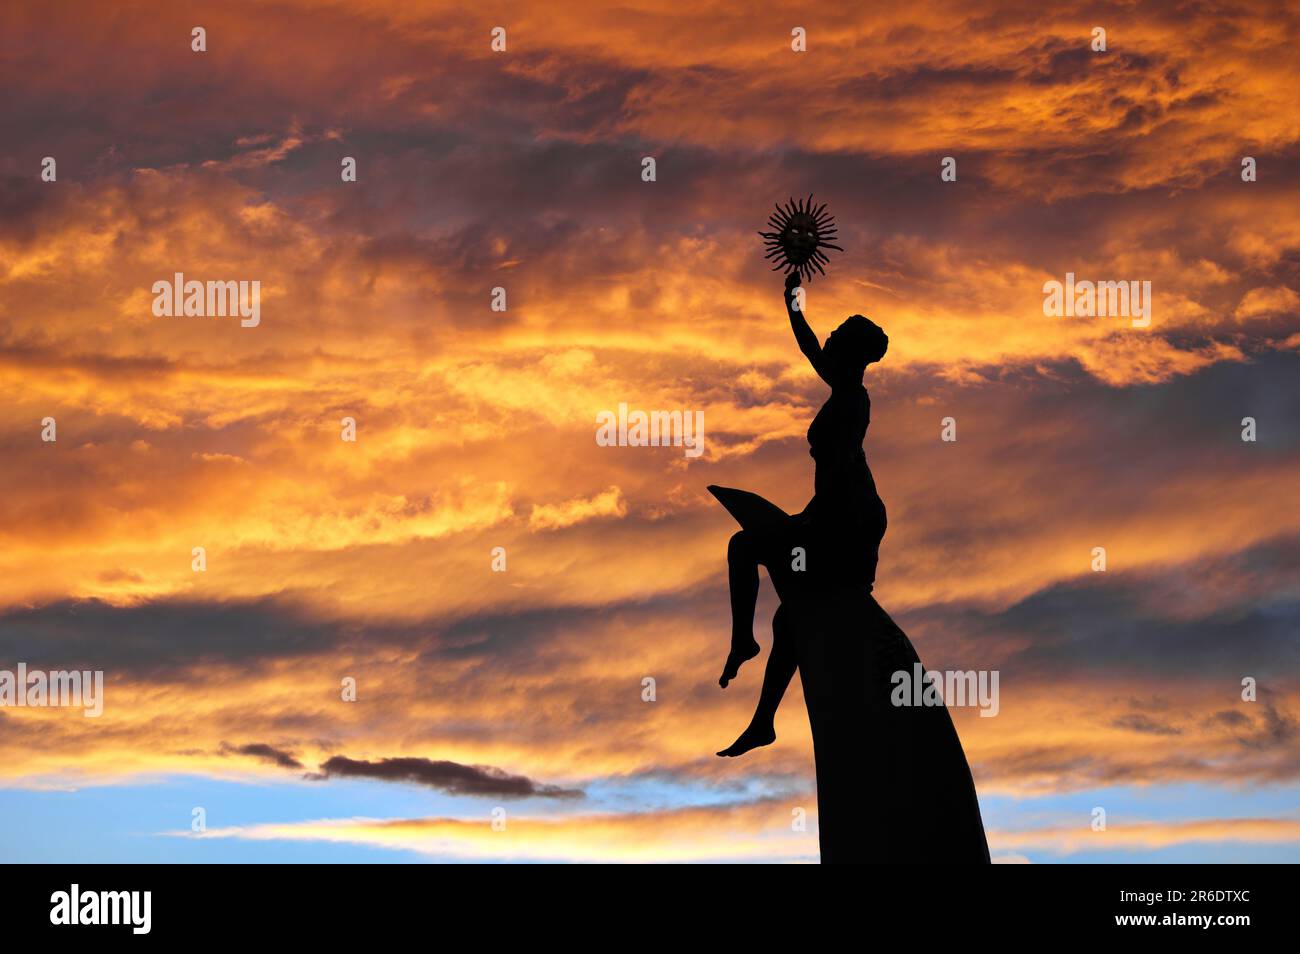 La silouette di una scultura contro un cielo pieno di nuvole dai colori ambrati al tramonto Stockfoto